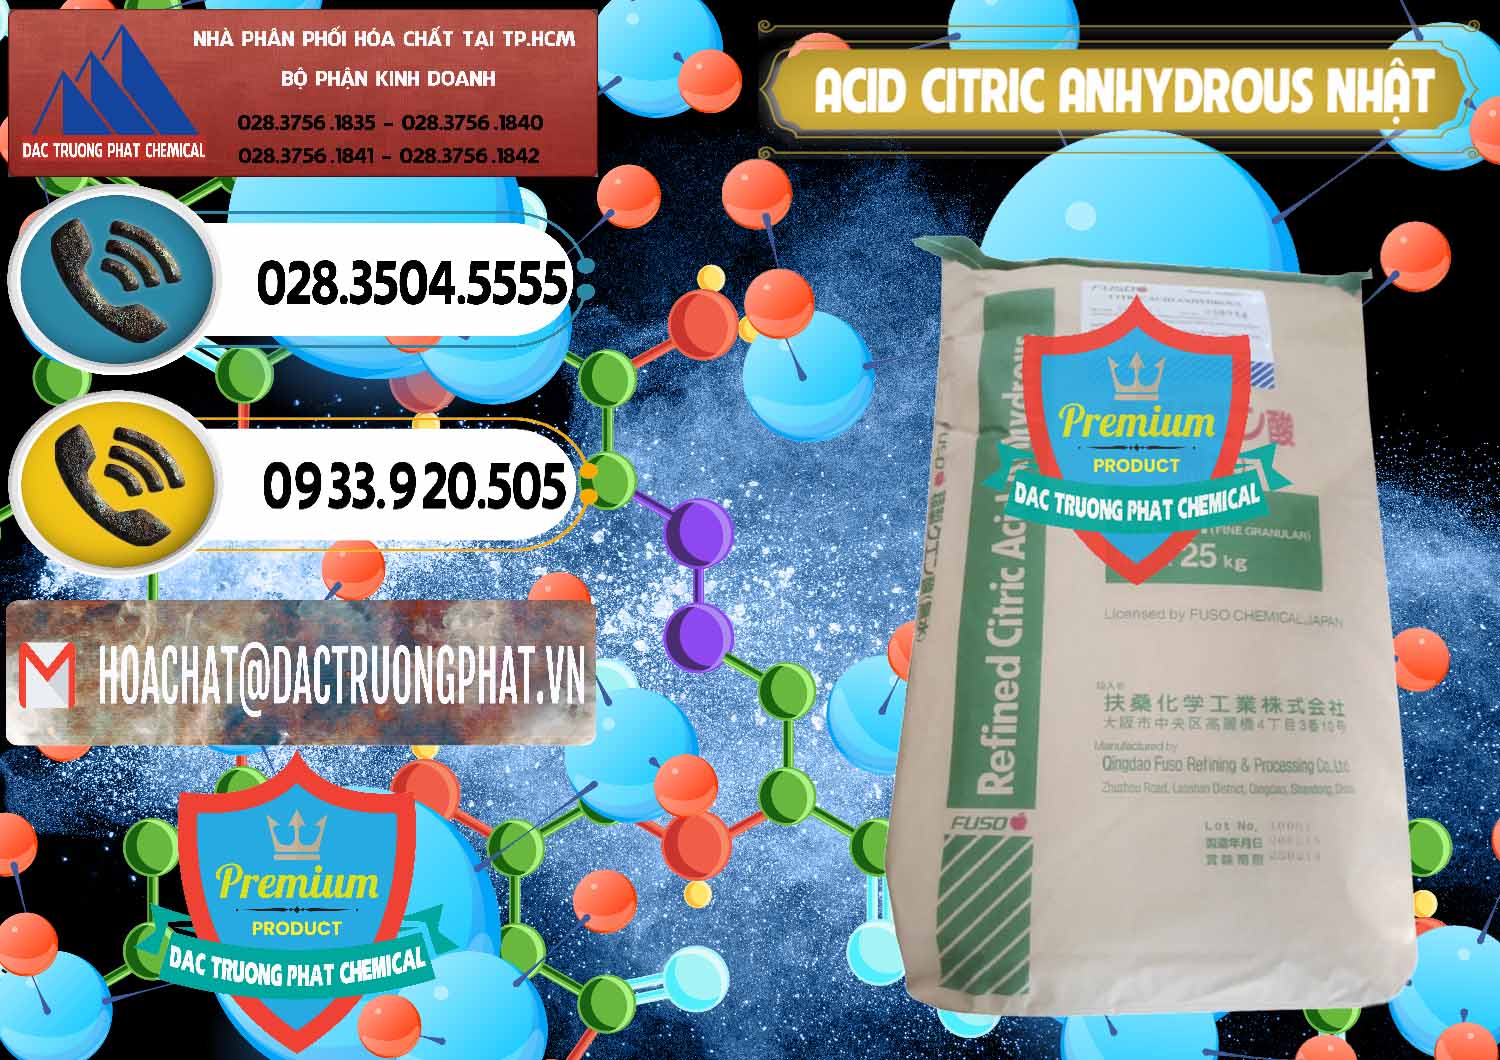 Công ty chuyên cung cấp và bán Acid Citric - Axit Citric Anhydrous FUSO Nhật Japan - 0439 - Công ty chuyên phân phối - nhập khẩu hóa chất tại TP.HCM - hoachatdetnhuom.vn